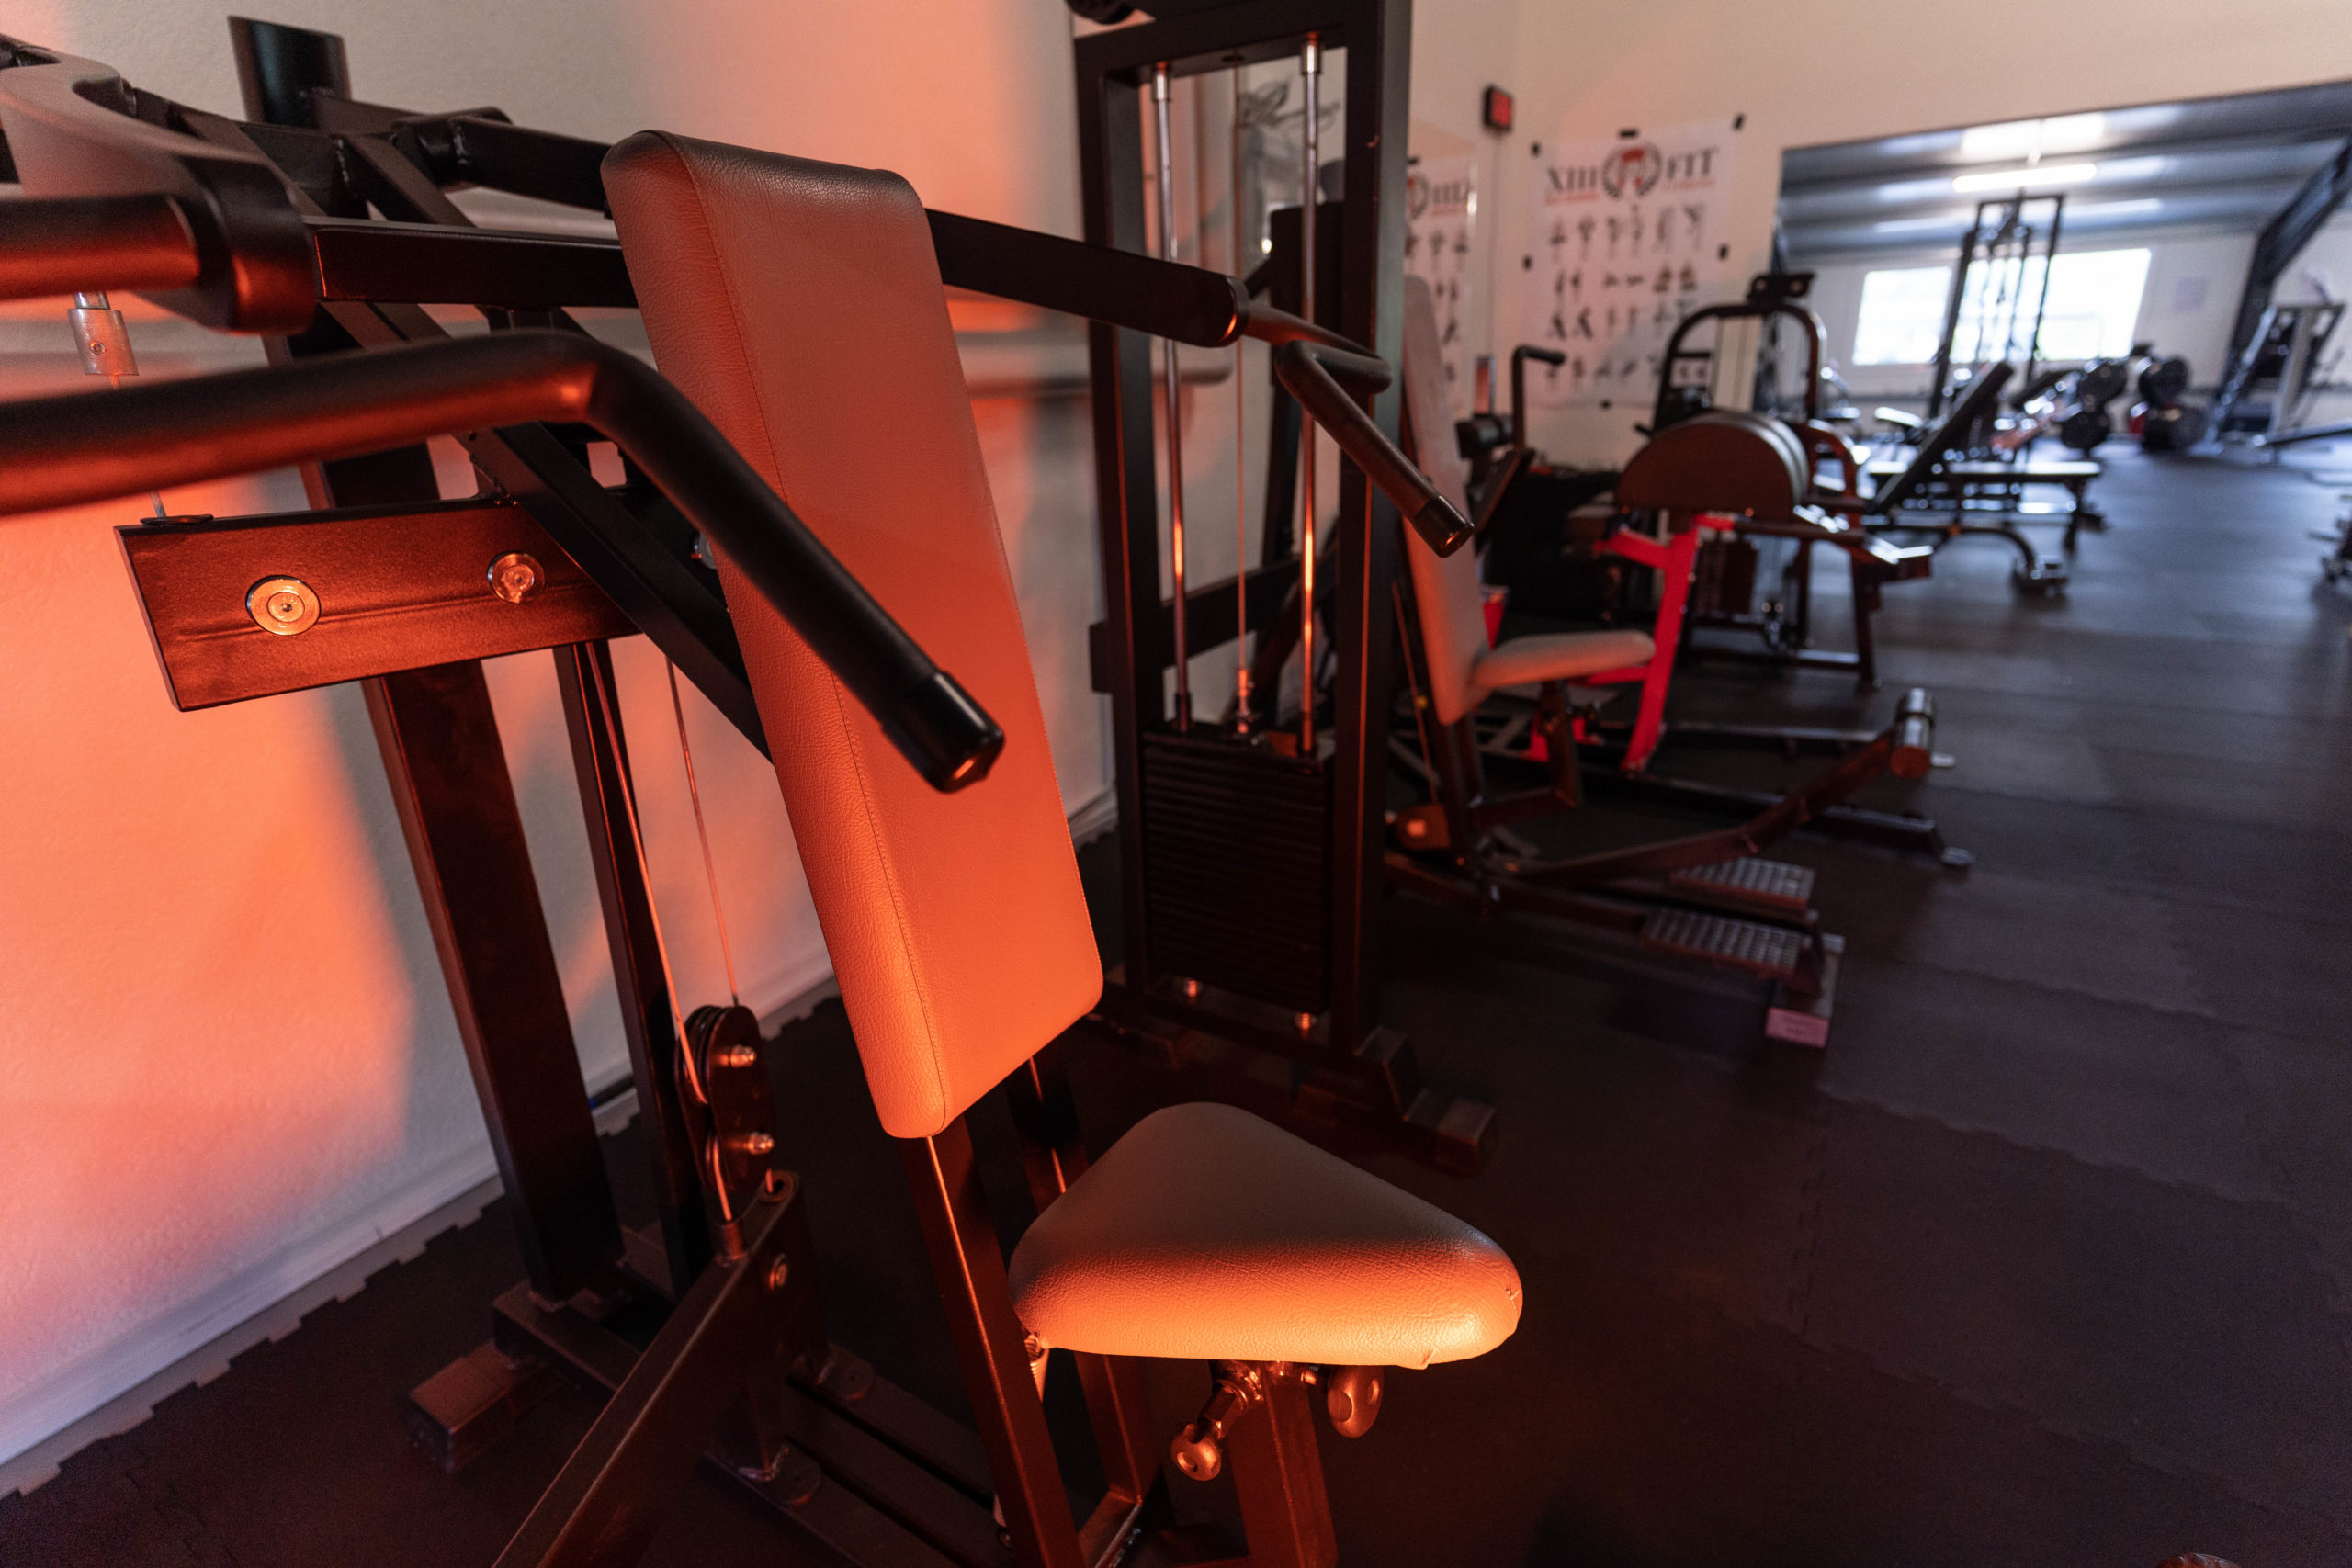 Salle Fitness Porrentruy - 13 FIT - Musculation Cardio Force - Pour s'Entraîner sur des Machines Anciennes et Modernes Avec Salle Pour Femmes